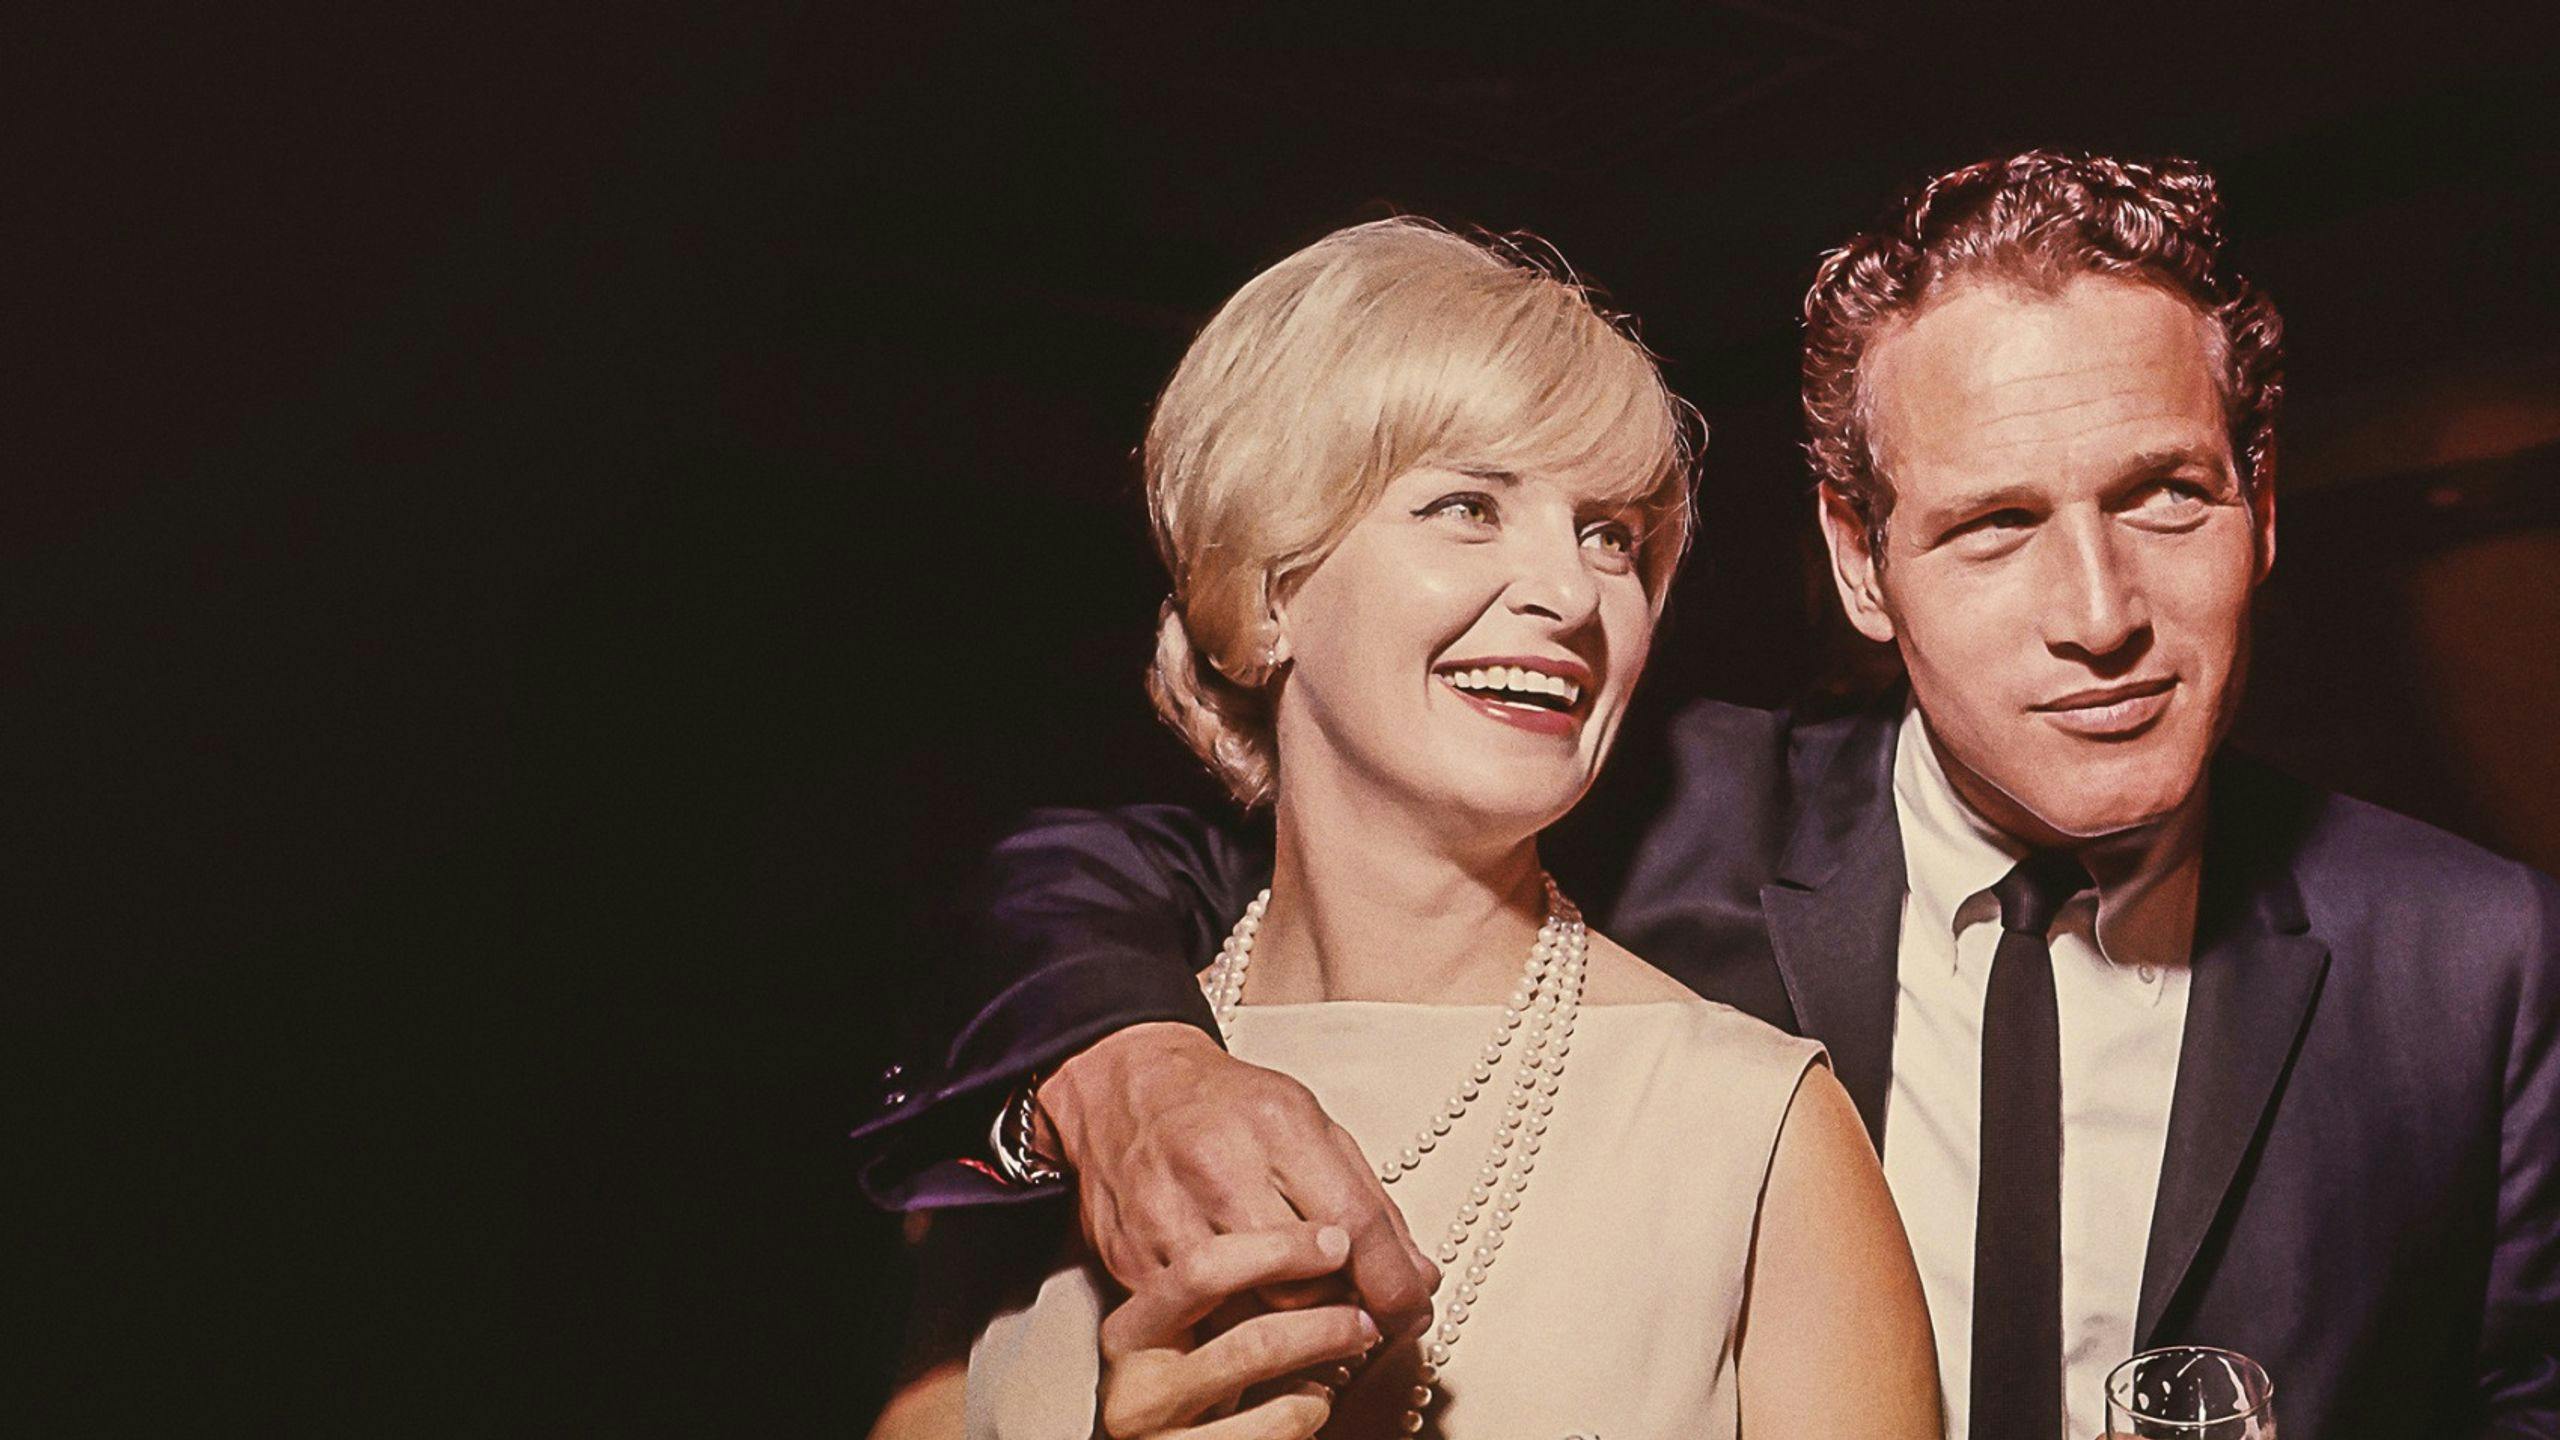 Imagen de Paul Newman y Joanne Woodward en la docuserie 'Las últimas estrellas de Hollywood'.